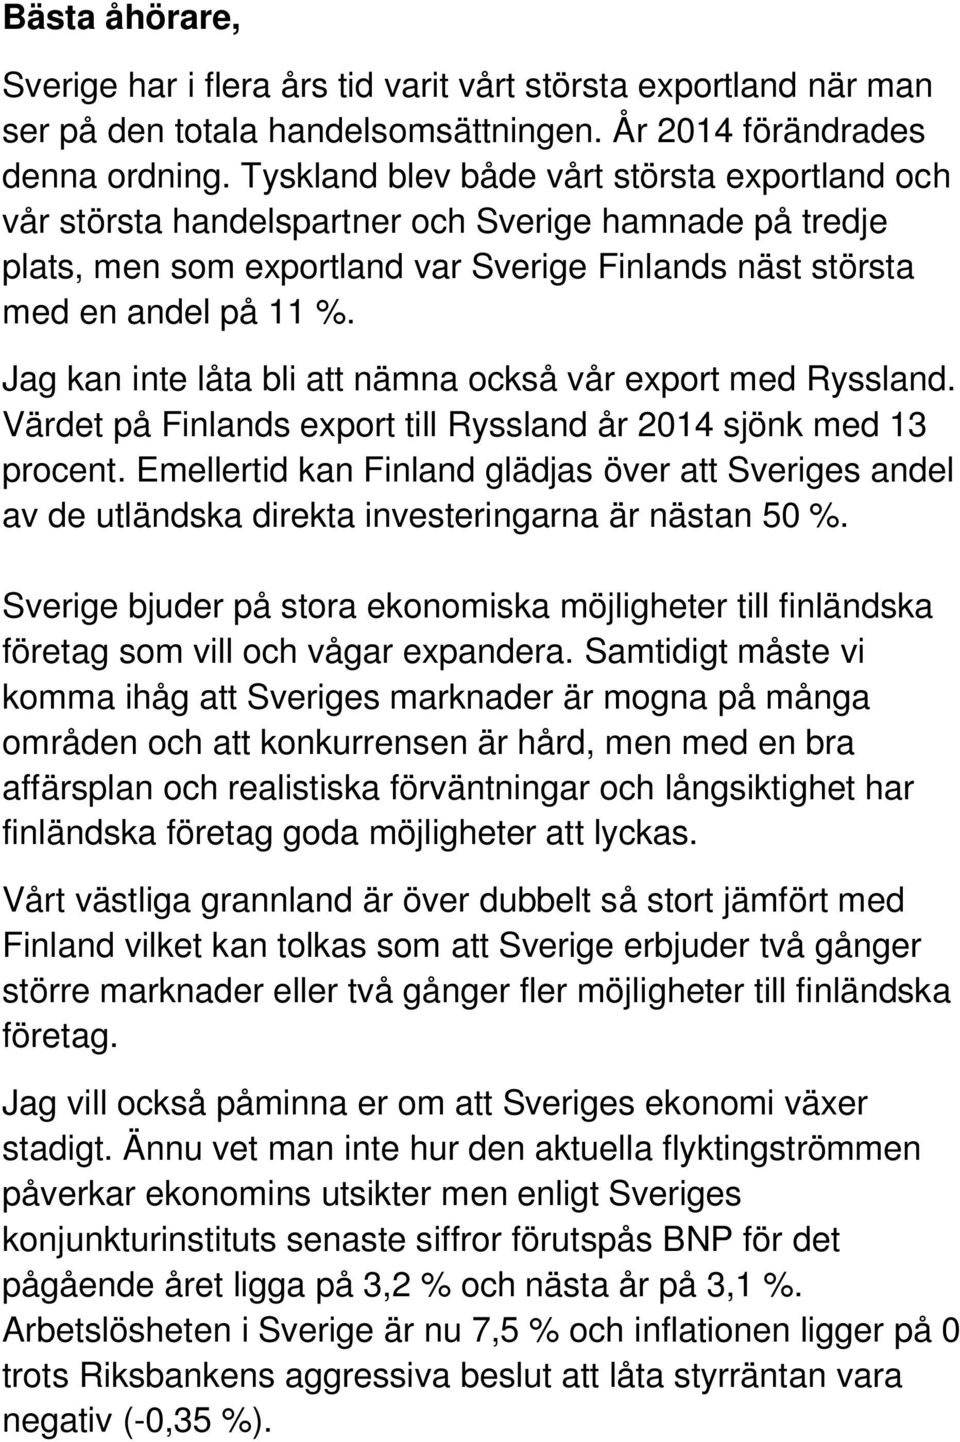 Jag kan inte låta bli att nämna också vår export med Ryssland. Värdet på Finlands export till Ryssland år 2014 sjönk med 13 procent.